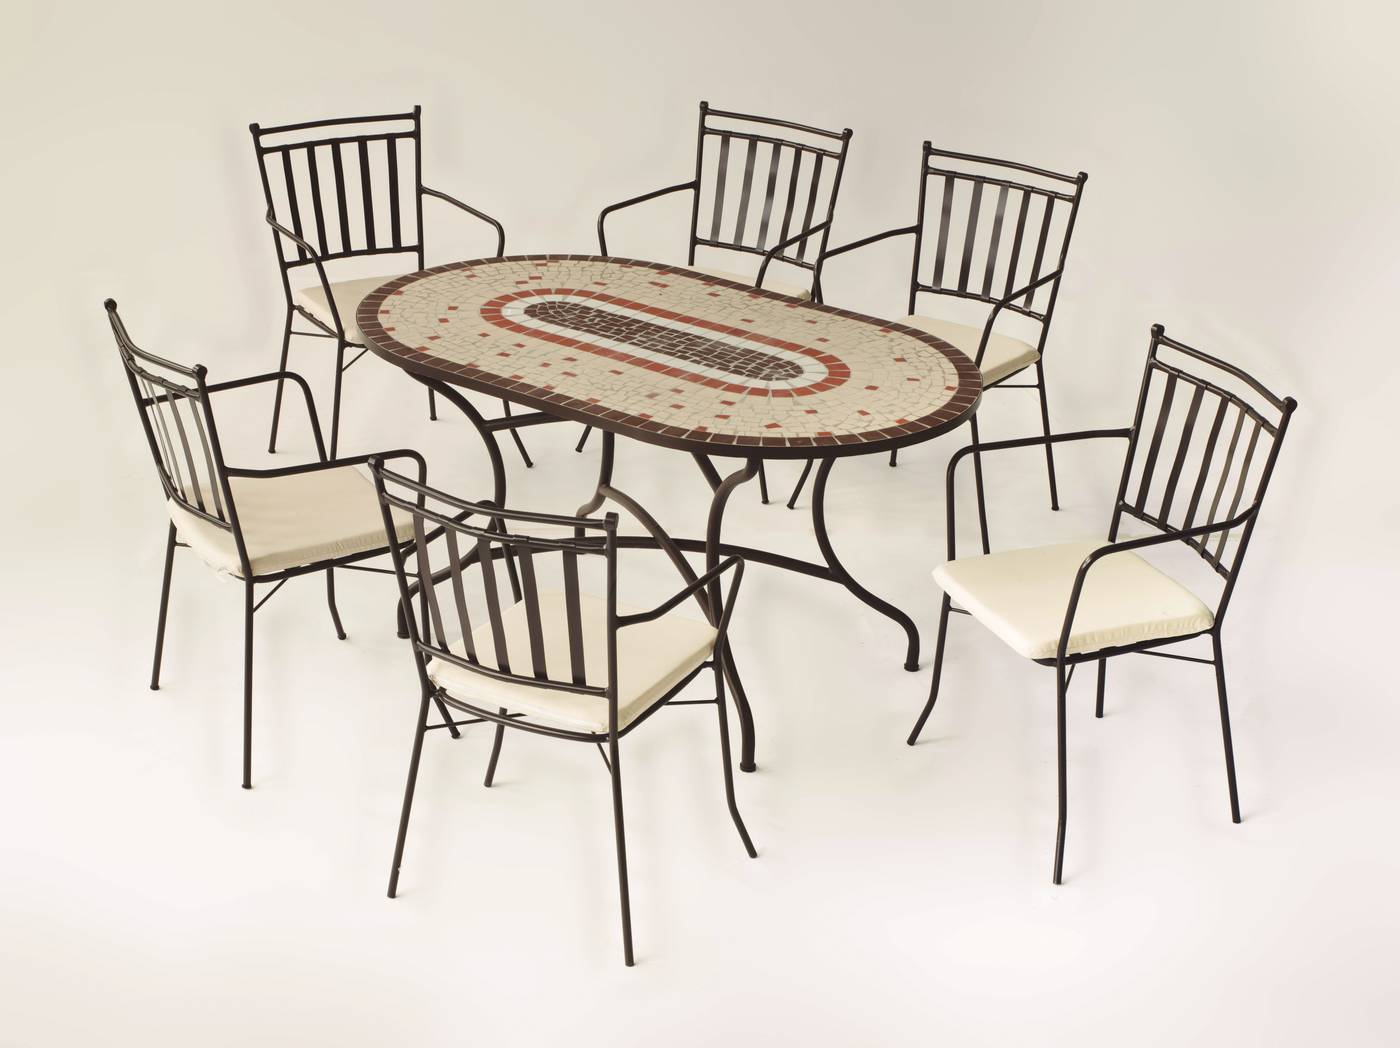 Conjunto de forja color bronce: mesa con tablero mosaico de 150 cm + 4 sillones con cojines asiento.